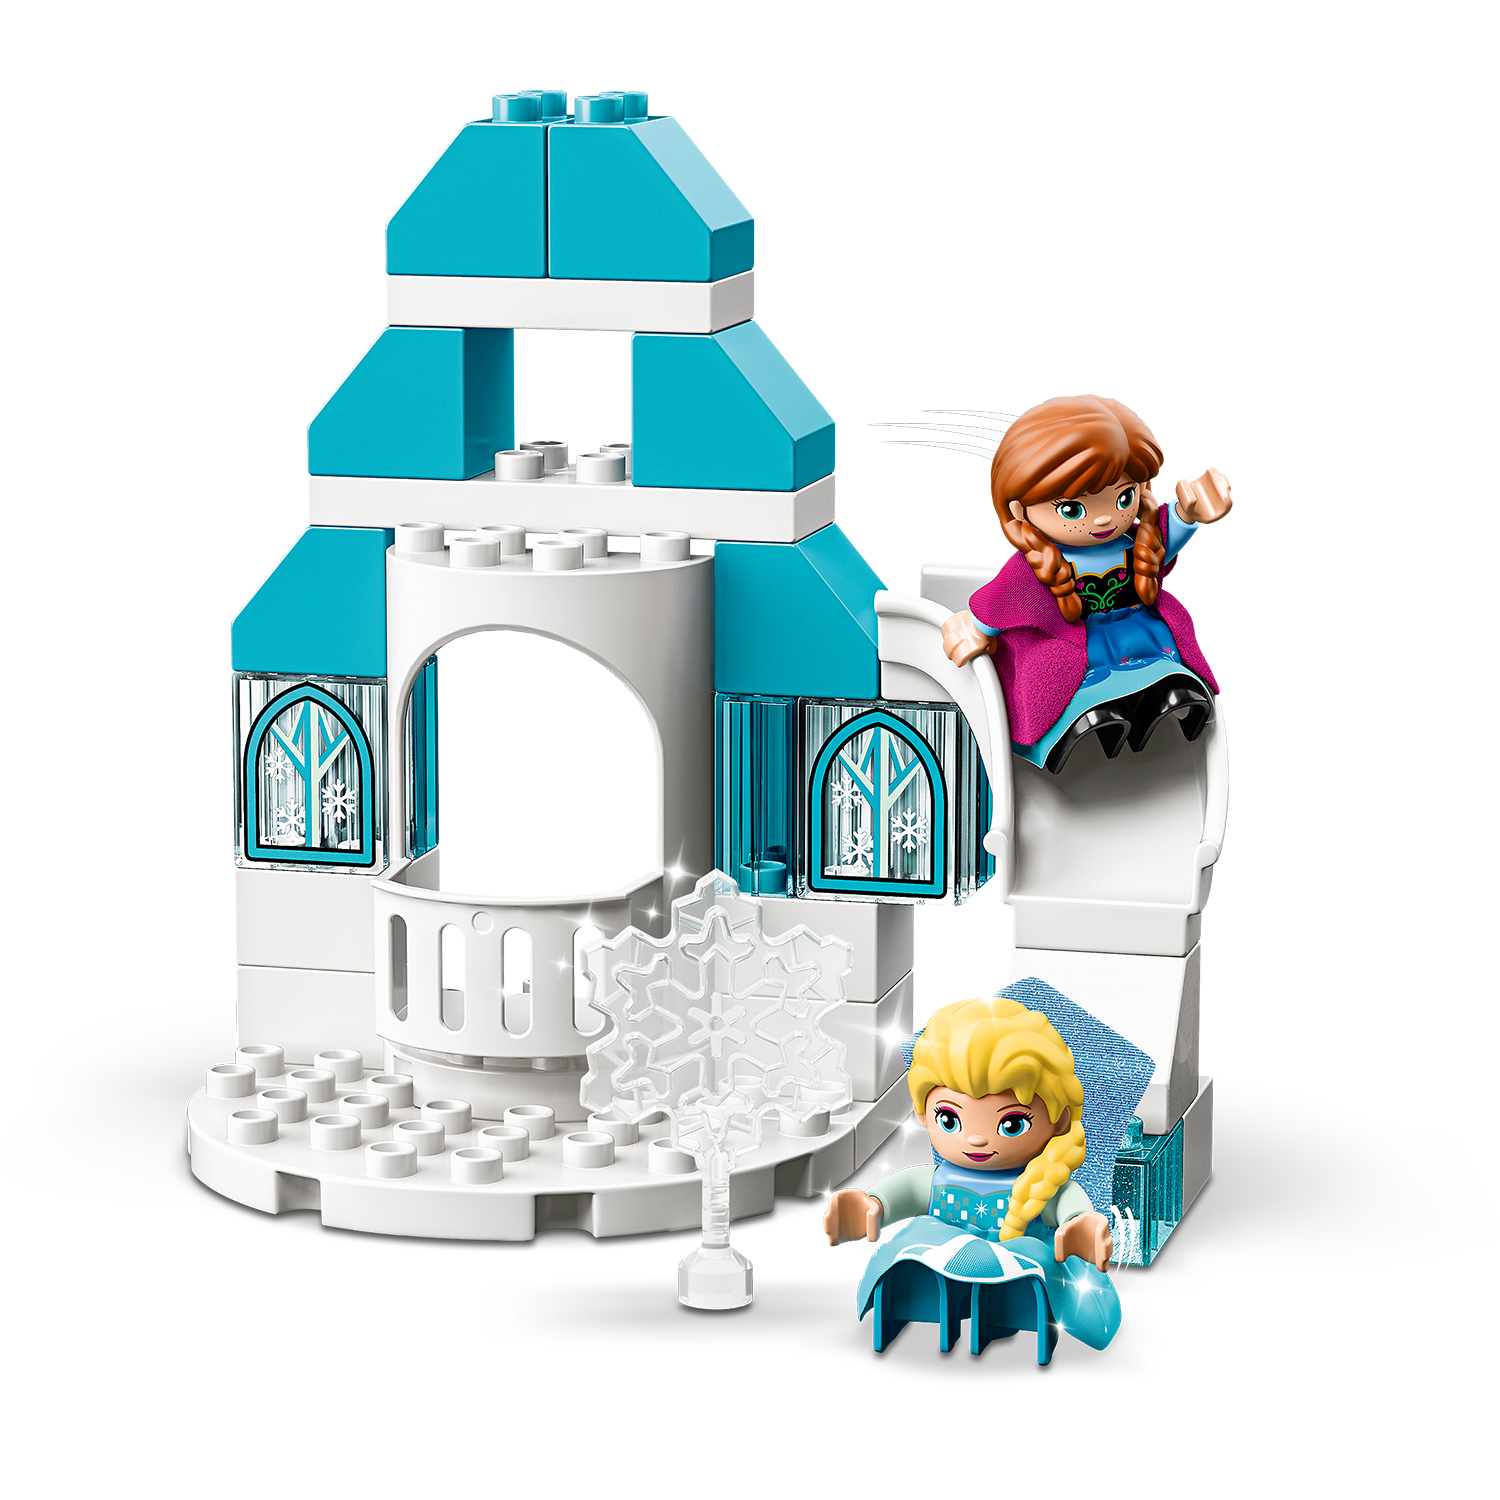 Il castello di ghiaccio di frozen - 10899 - DISNEY PRINCESS, LEGO DUPLO, Frozen, Lego